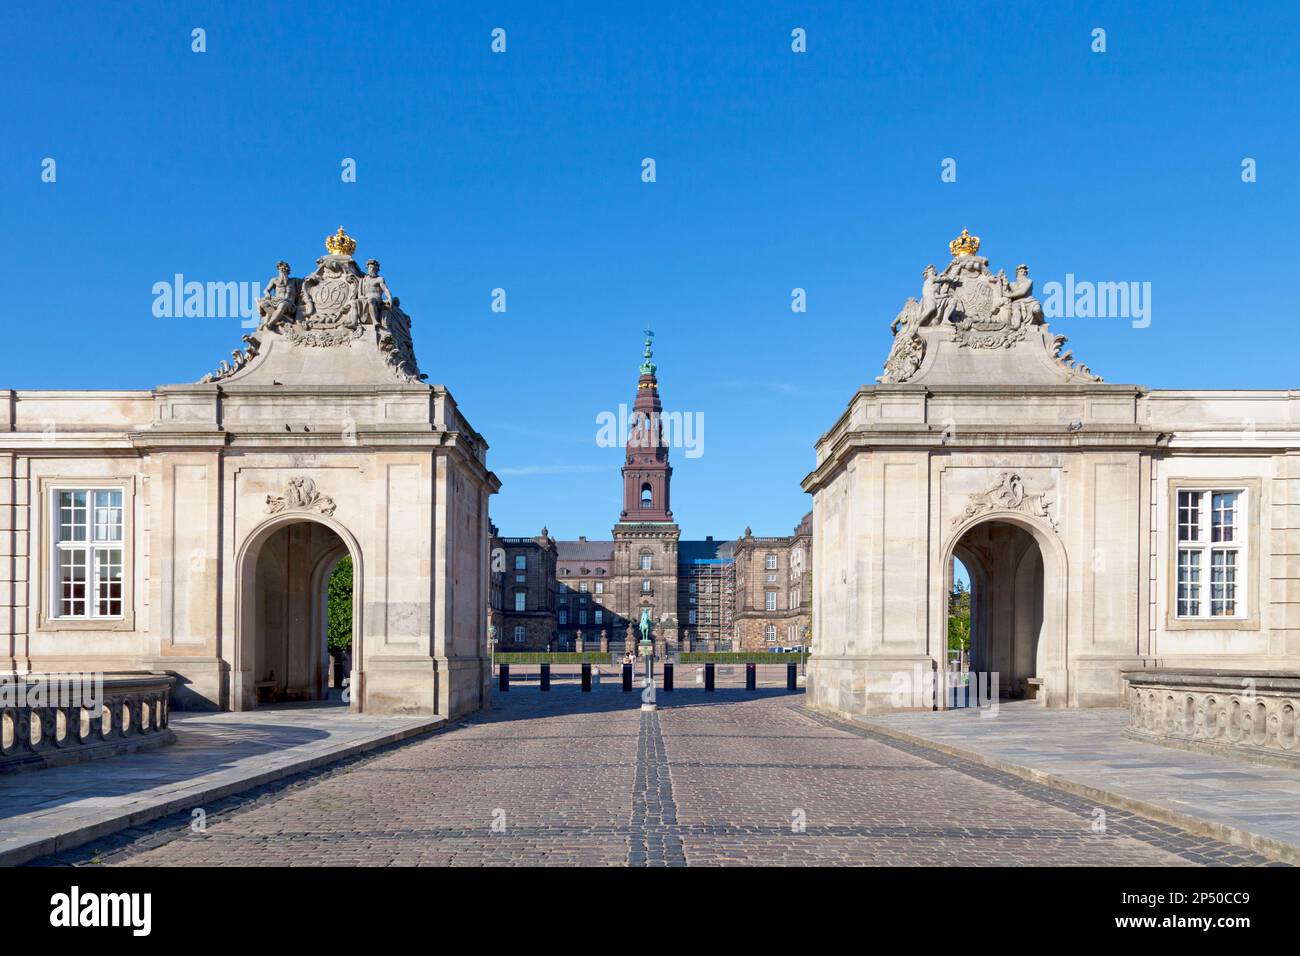 Copenhague, Danemark - 28 juin 2019: Le Palais Christiansborg (Danois: Fente de Christiansborg) est un palais et un bâtiment gouvernemental sur l'îlot de machines à sous Banque D'Images